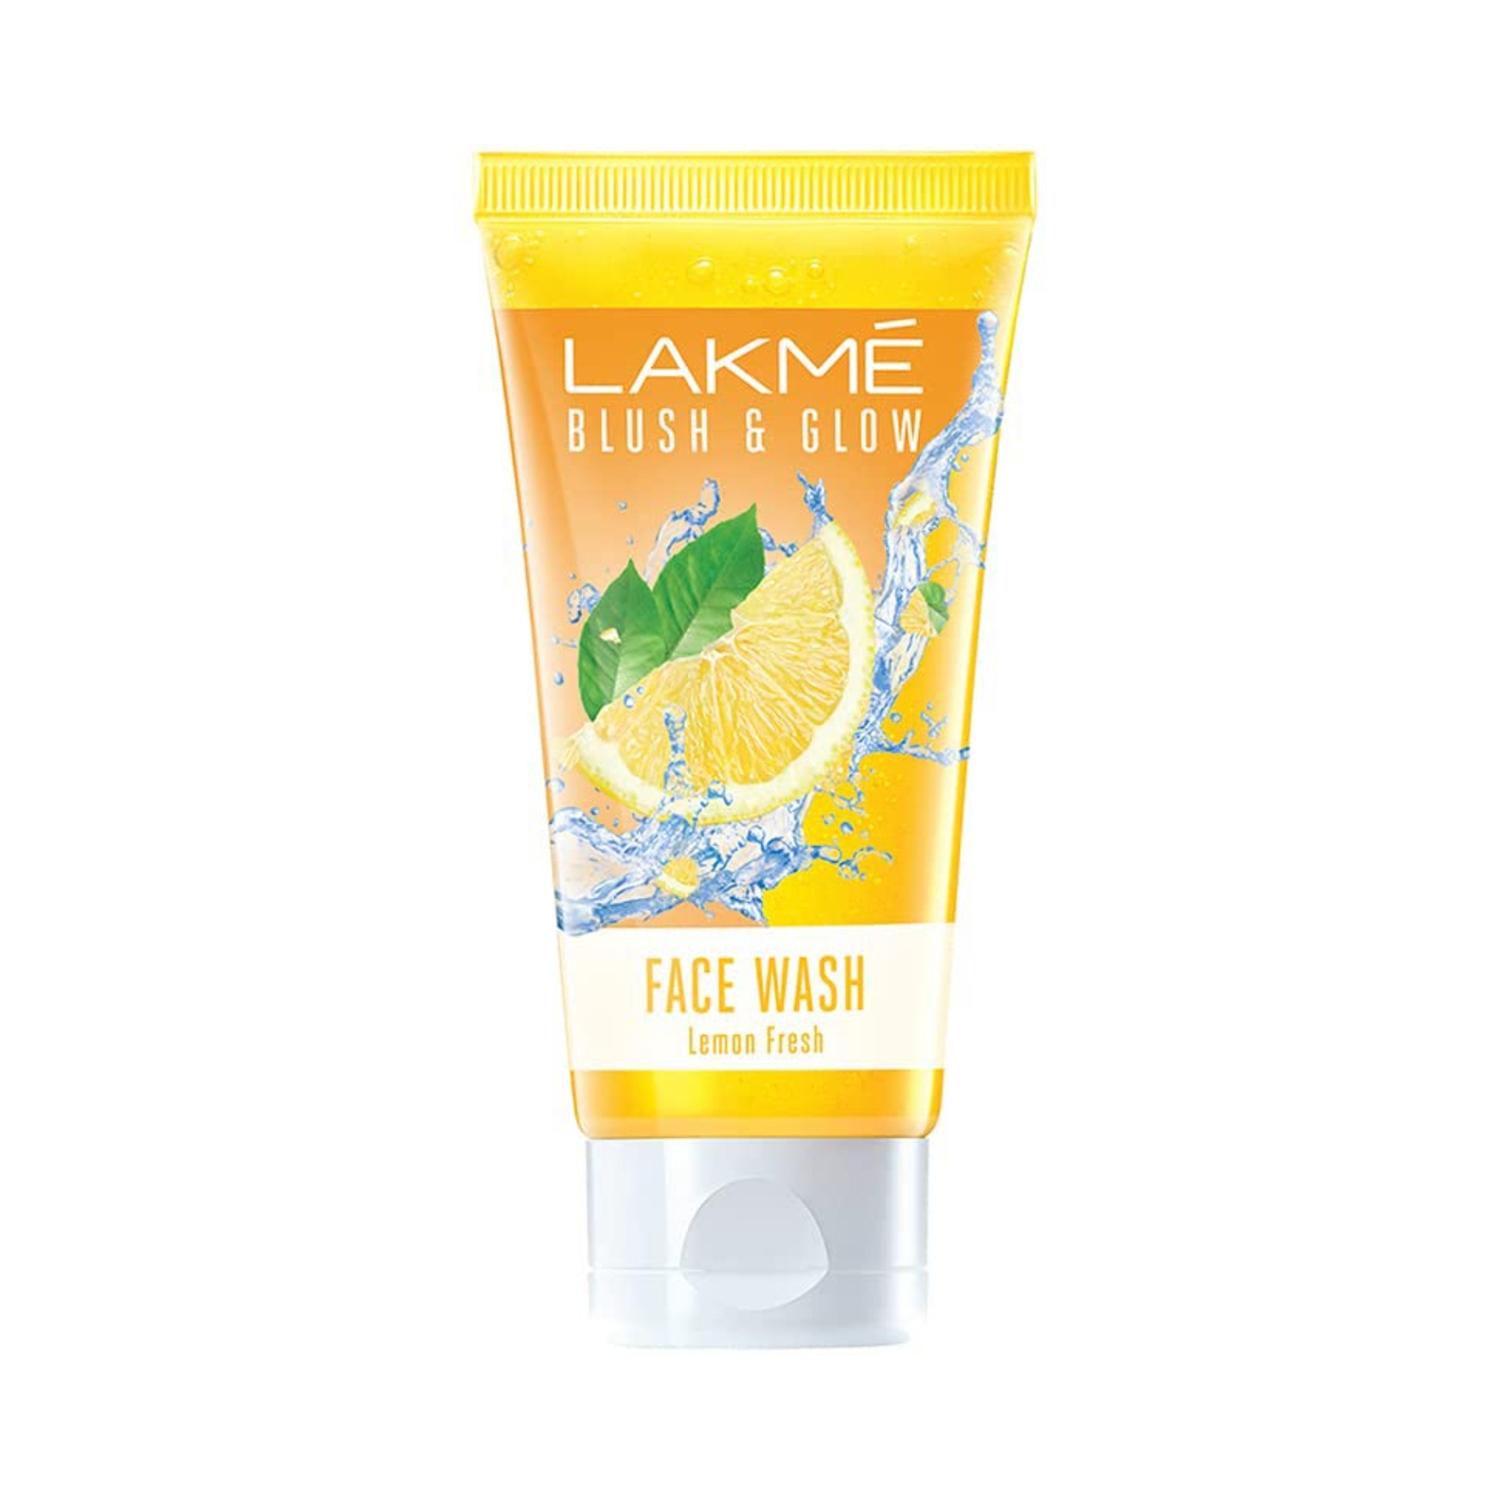 lakme blush & glow lemon freshness gel face wash with lemon extracts (50g)